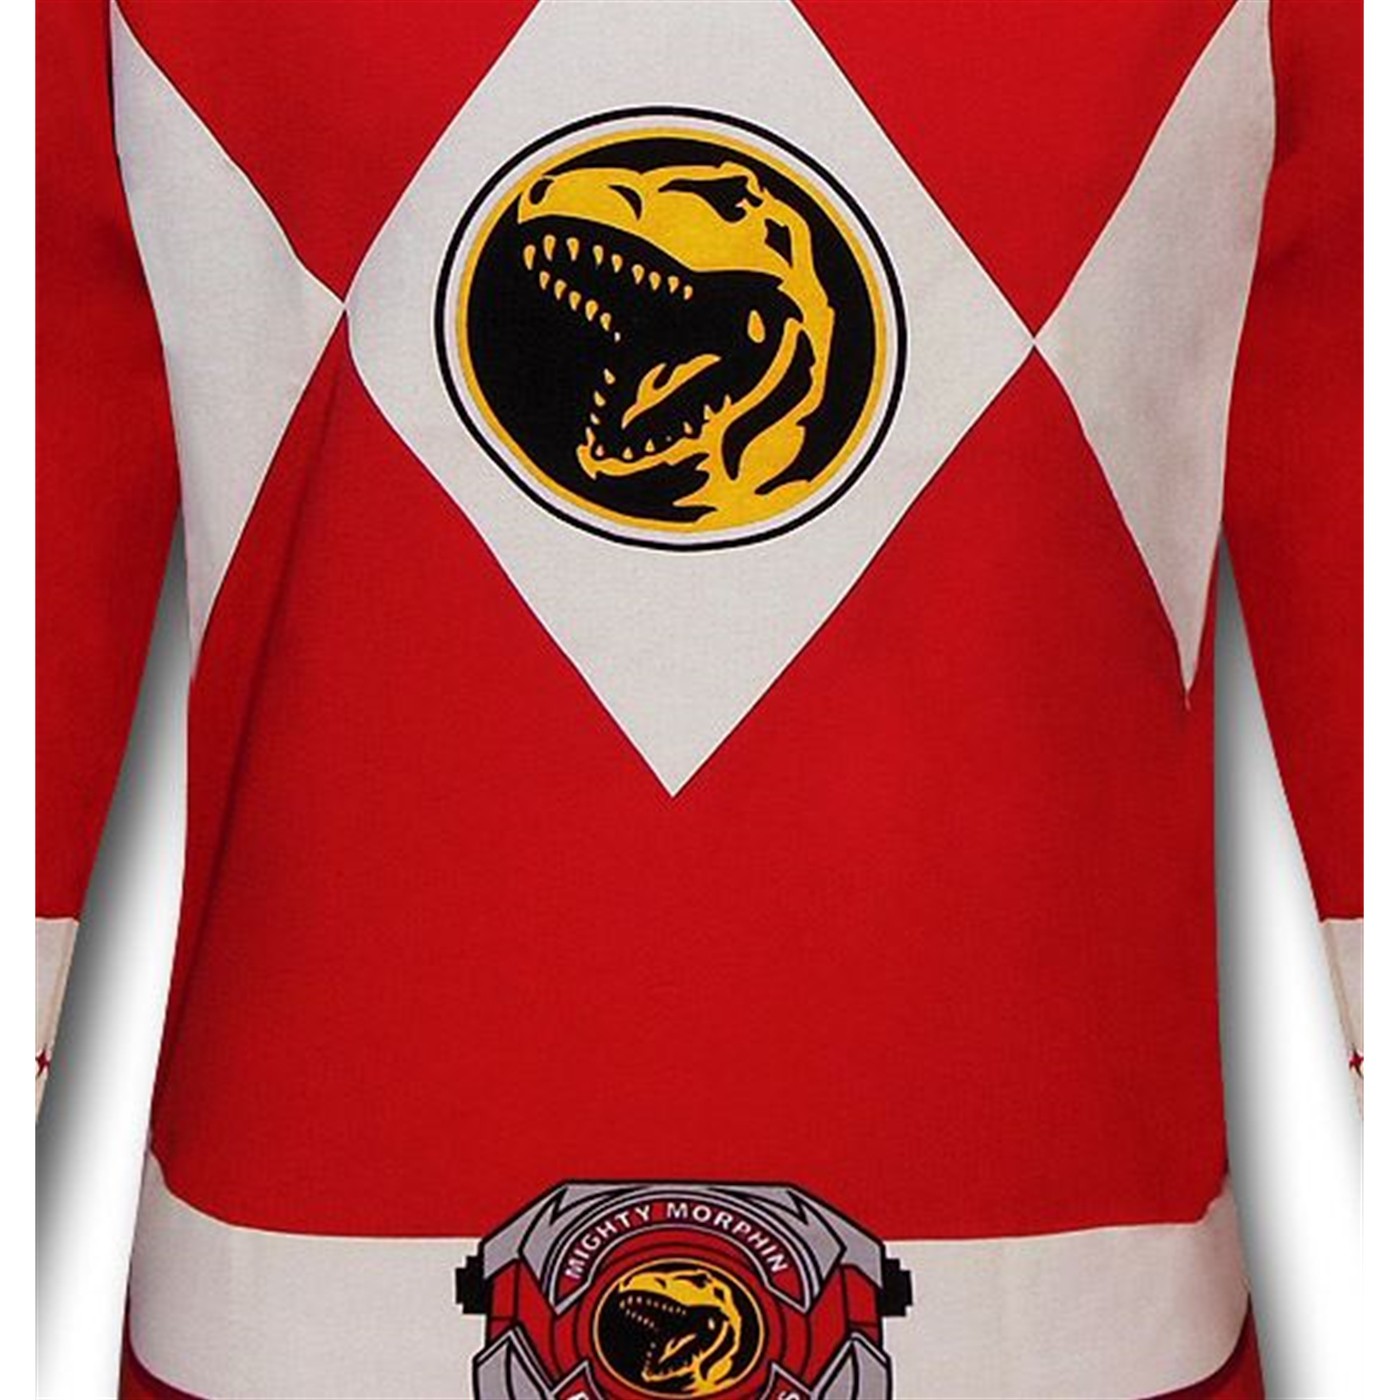 Power Ranger Red Ranger Long-Sleeve T-Shirt